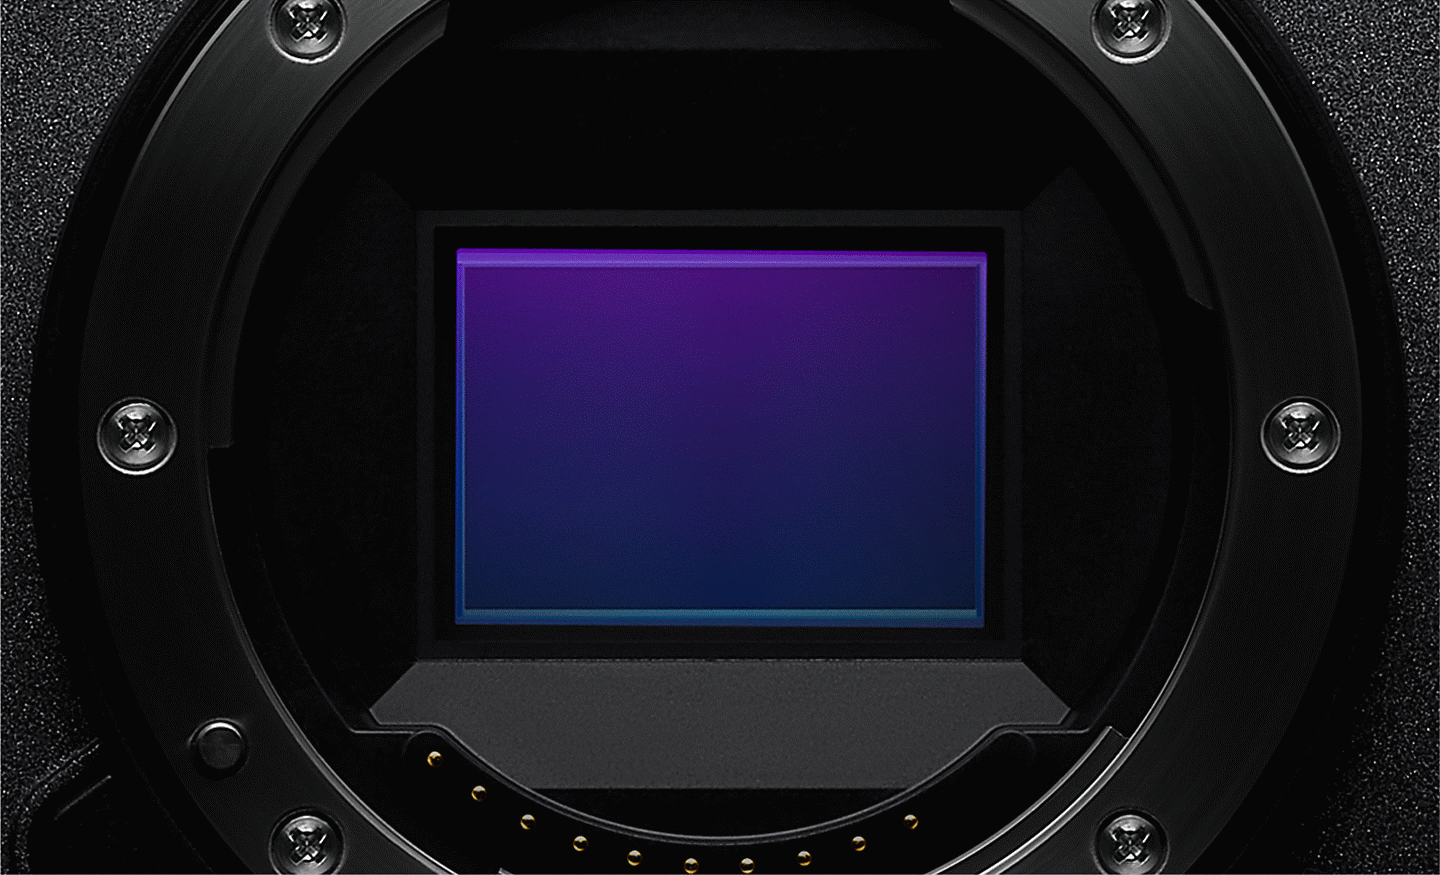 Camera sensor image